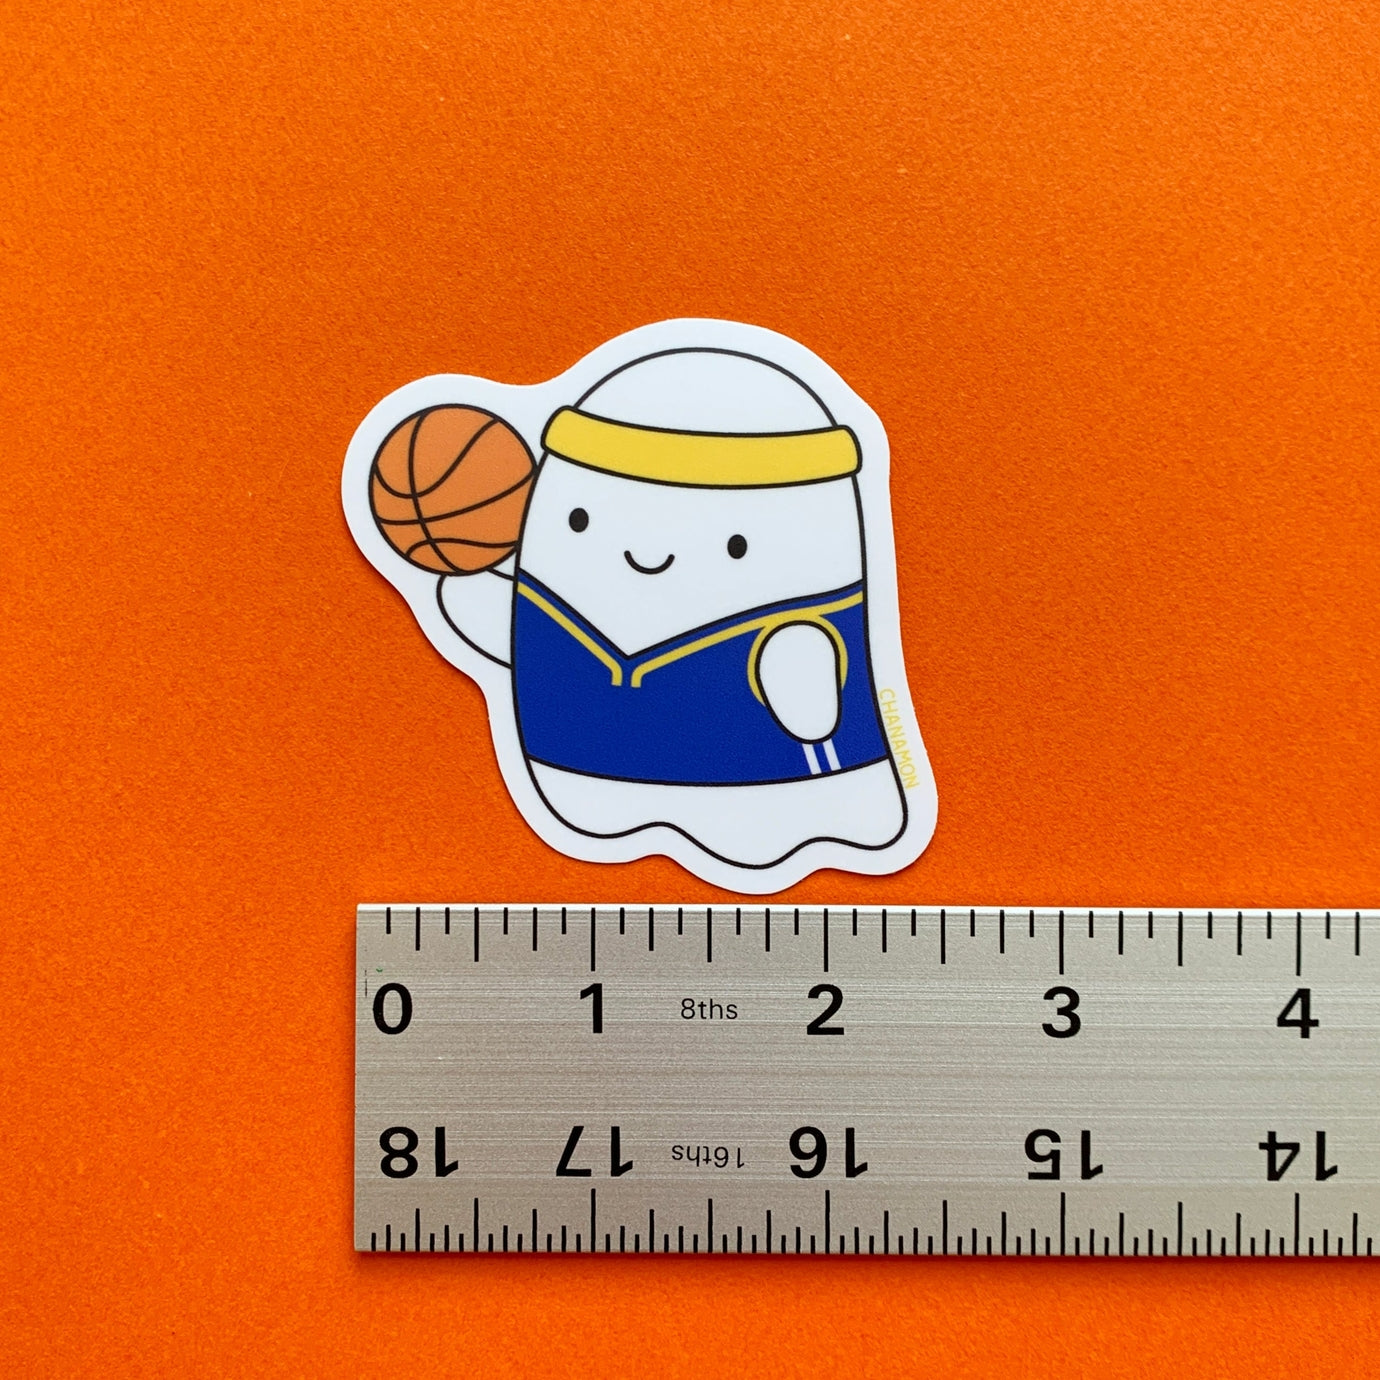 Warriors Basketball Ghost Sticker